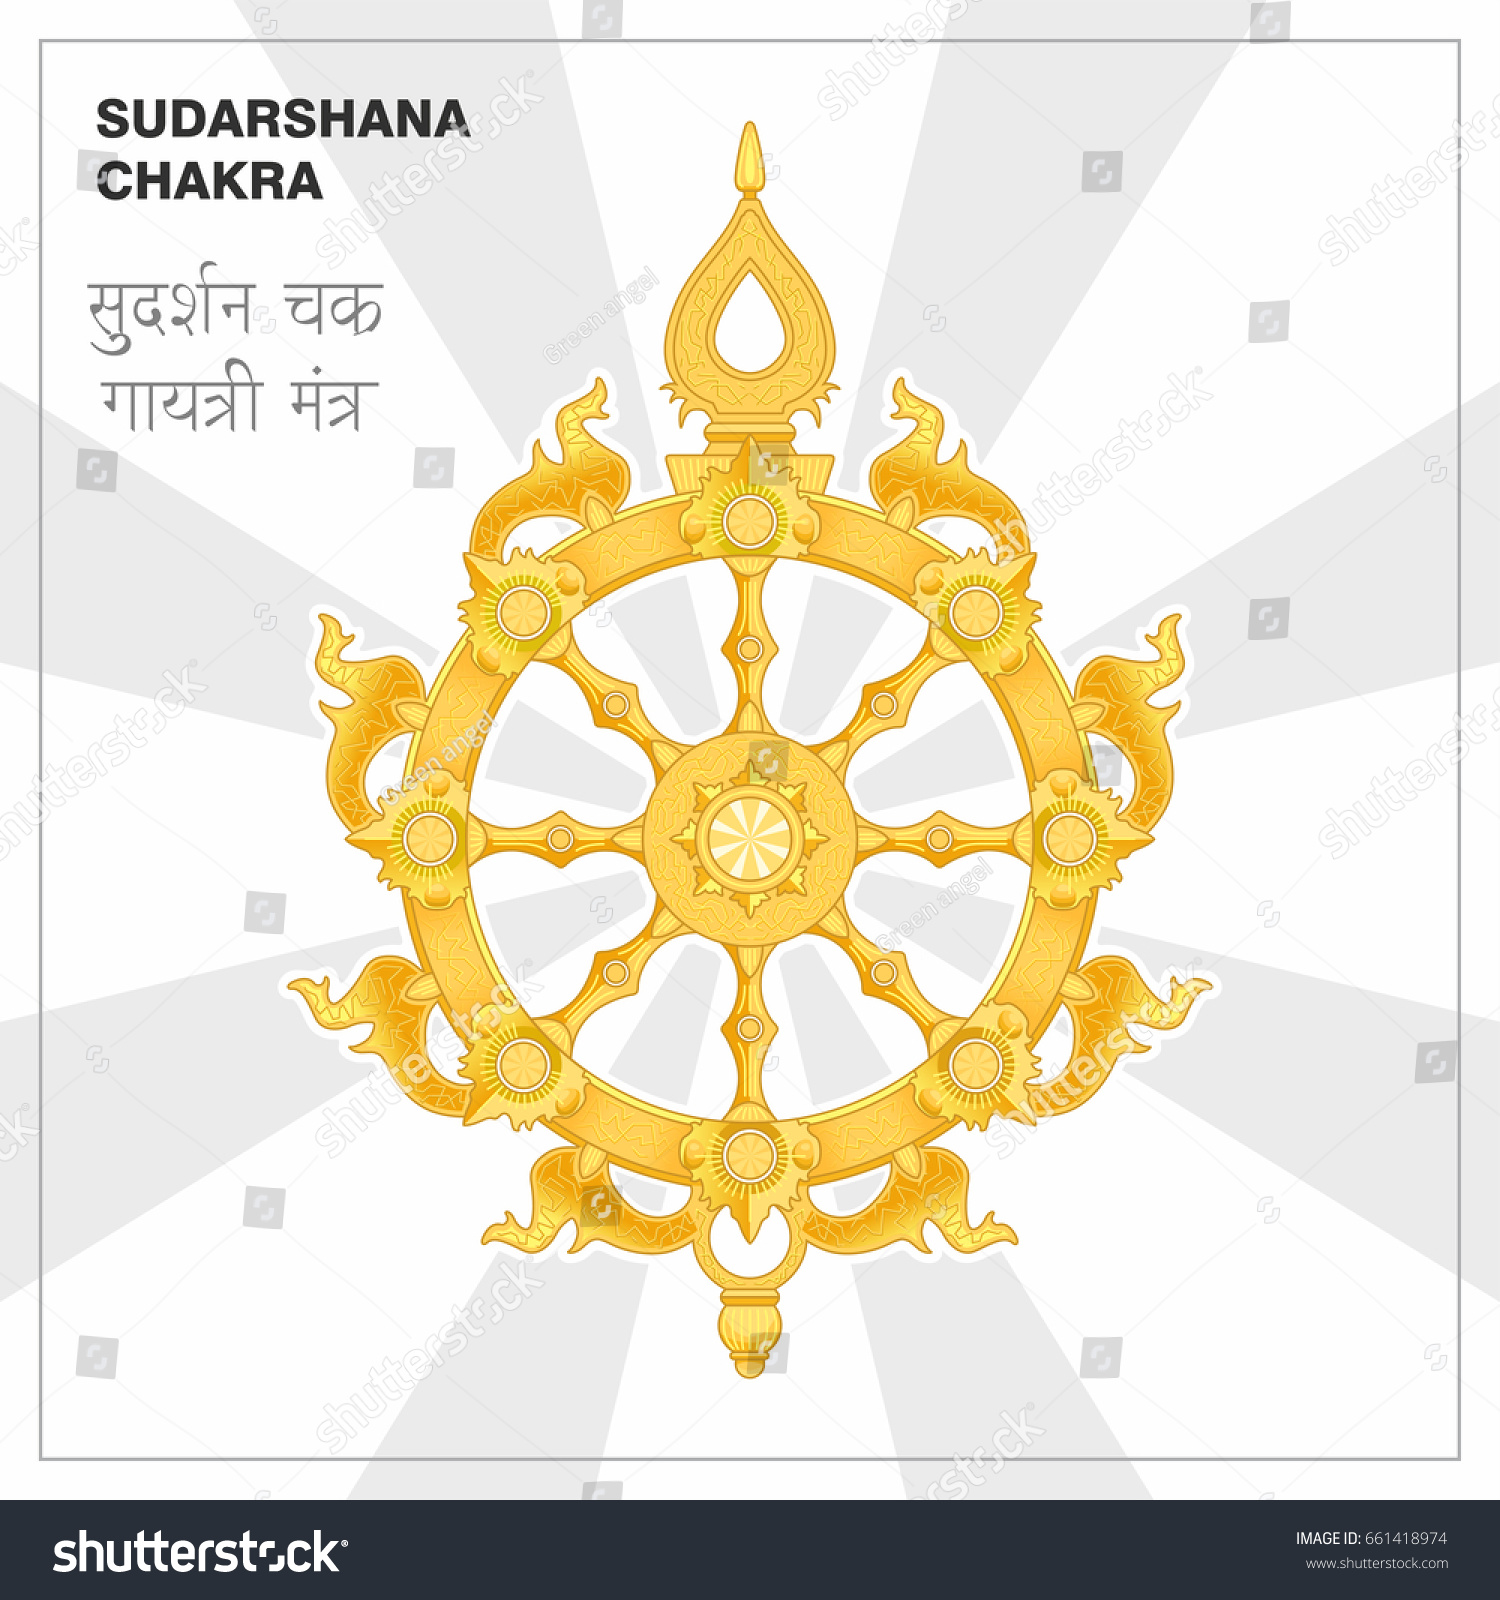 Sudarshana chakra